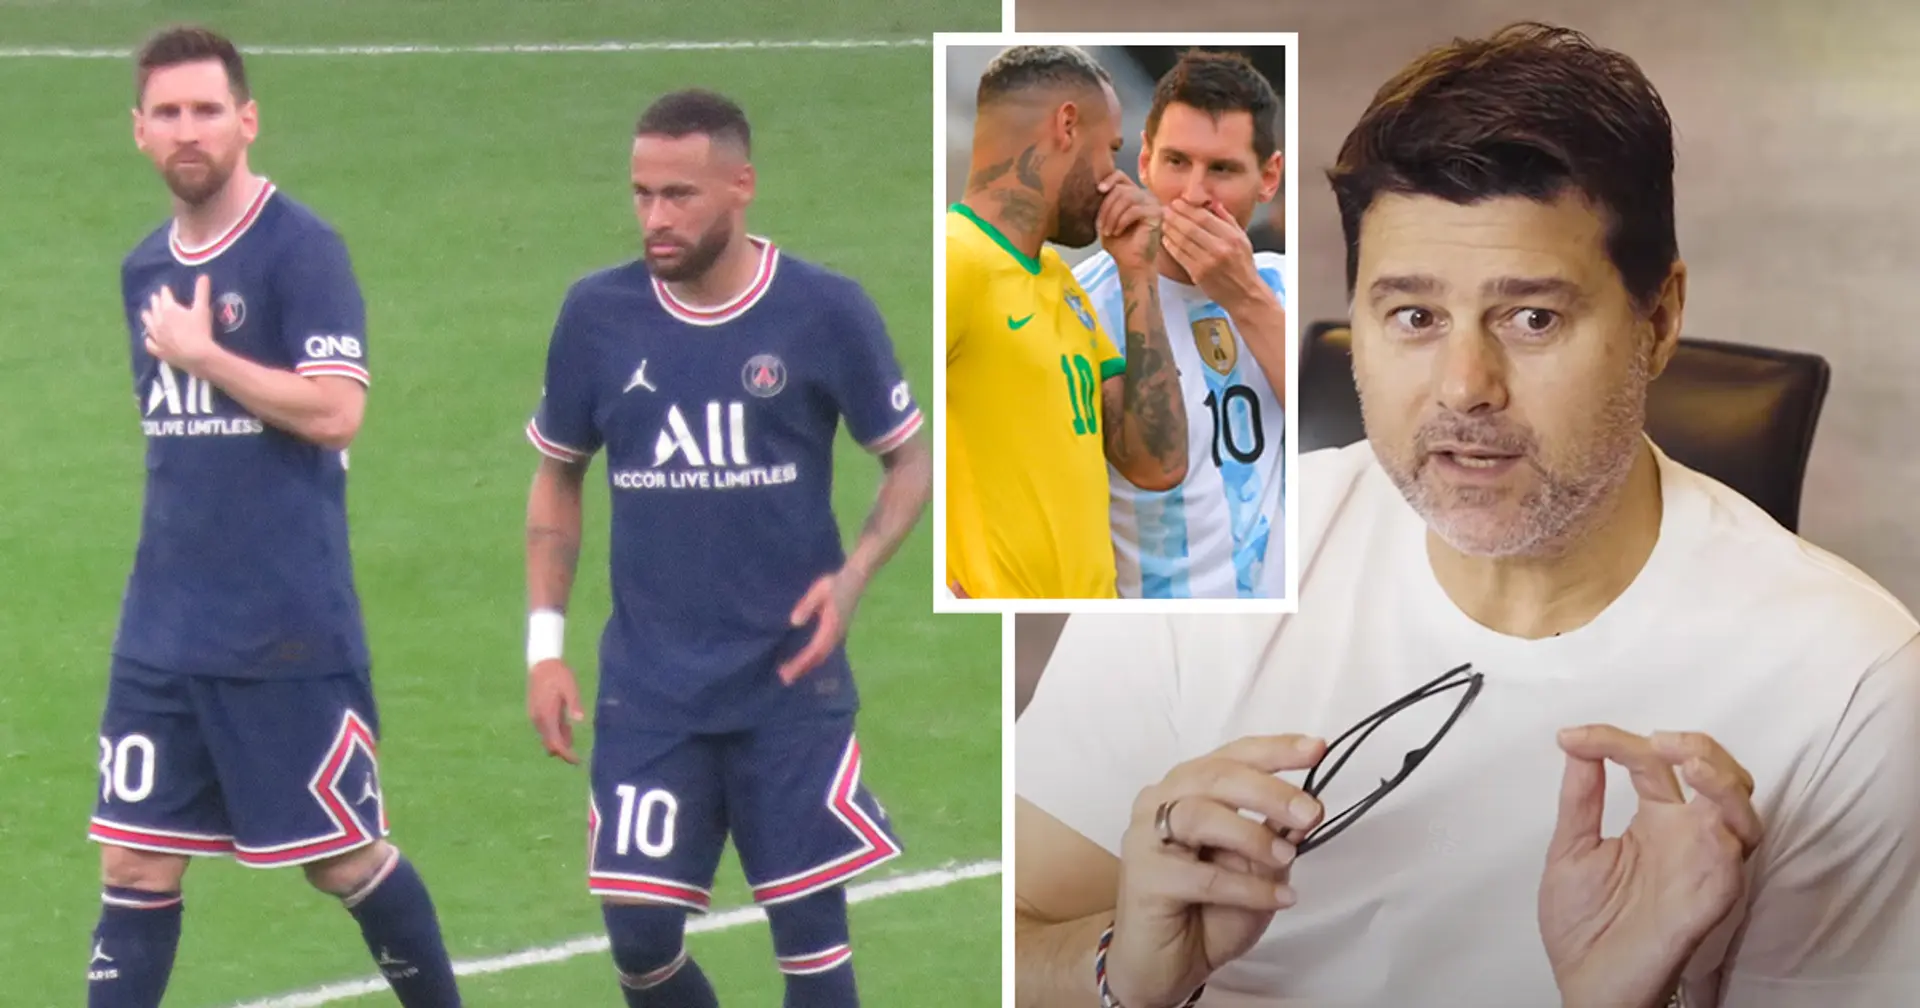 "J'ai dû me justifier": Pochettino se confie sur la réaction de Neymar lorsqu'il a qualifié Messi de meilleur joueur du monde